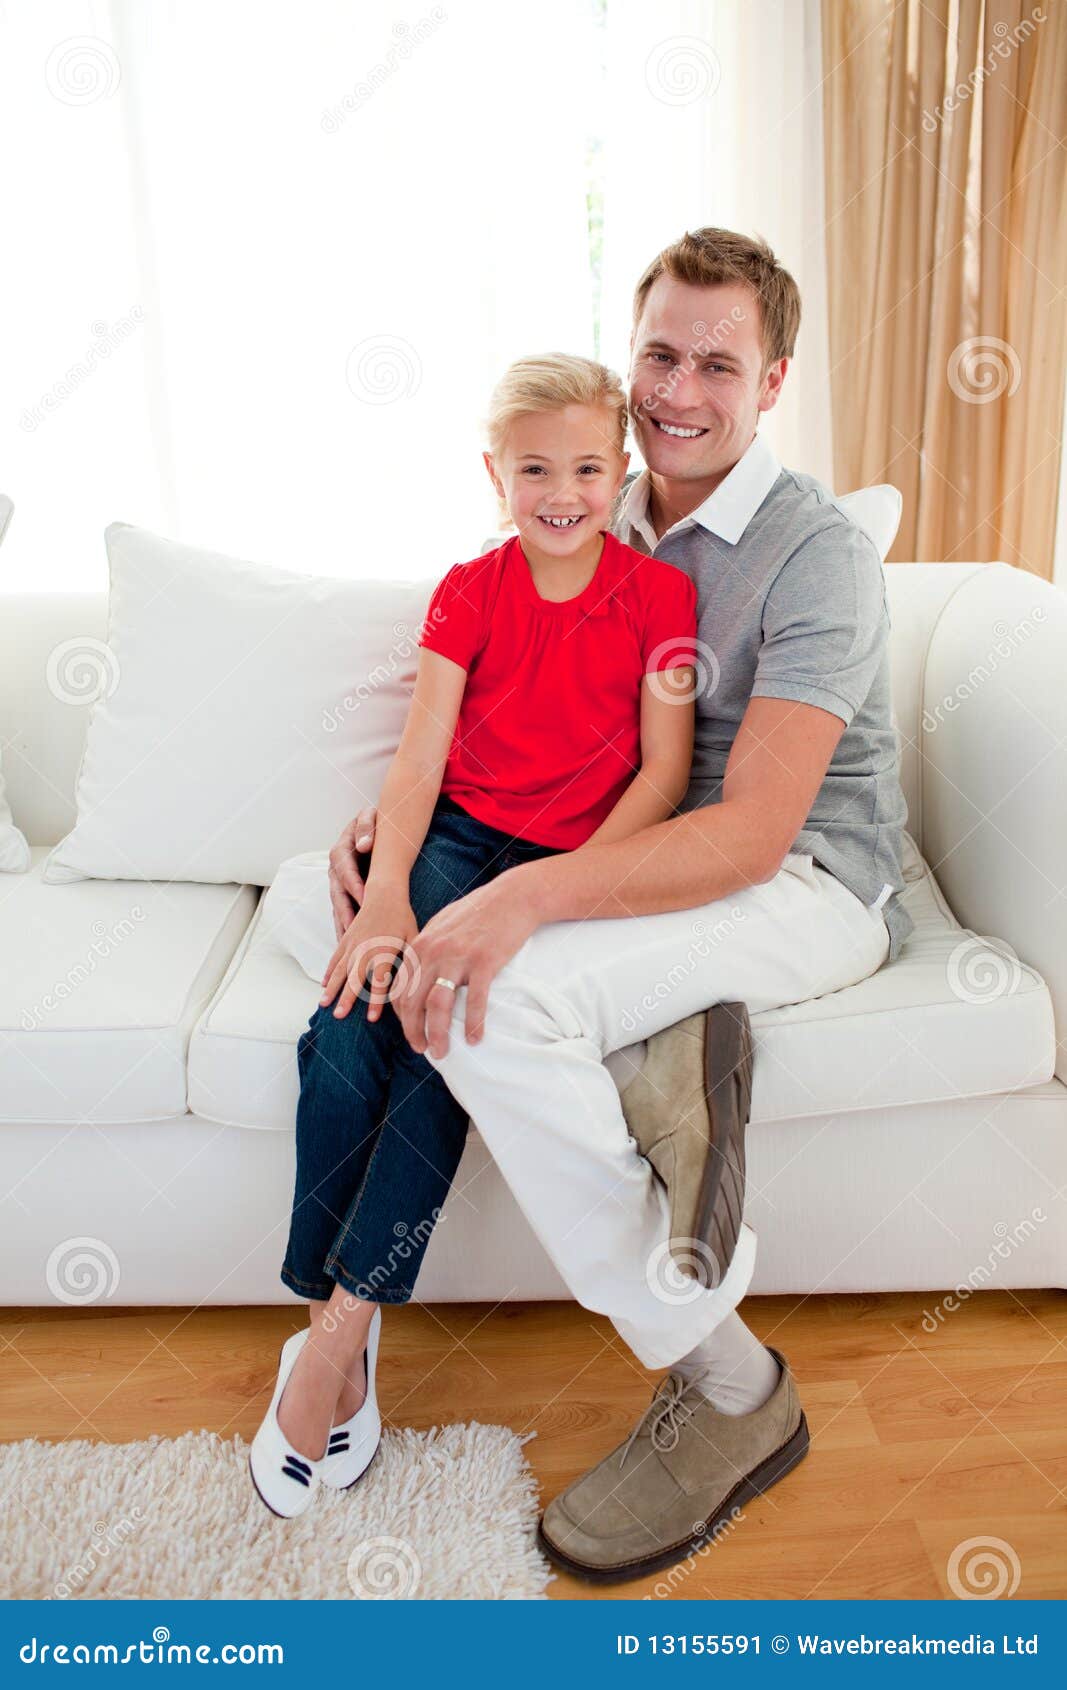 Папа дочку на диване. Отец и дочь на диване. Девочка с папой на диване. Дочь на коленках. Фотосессия папы с дочкой на диване.